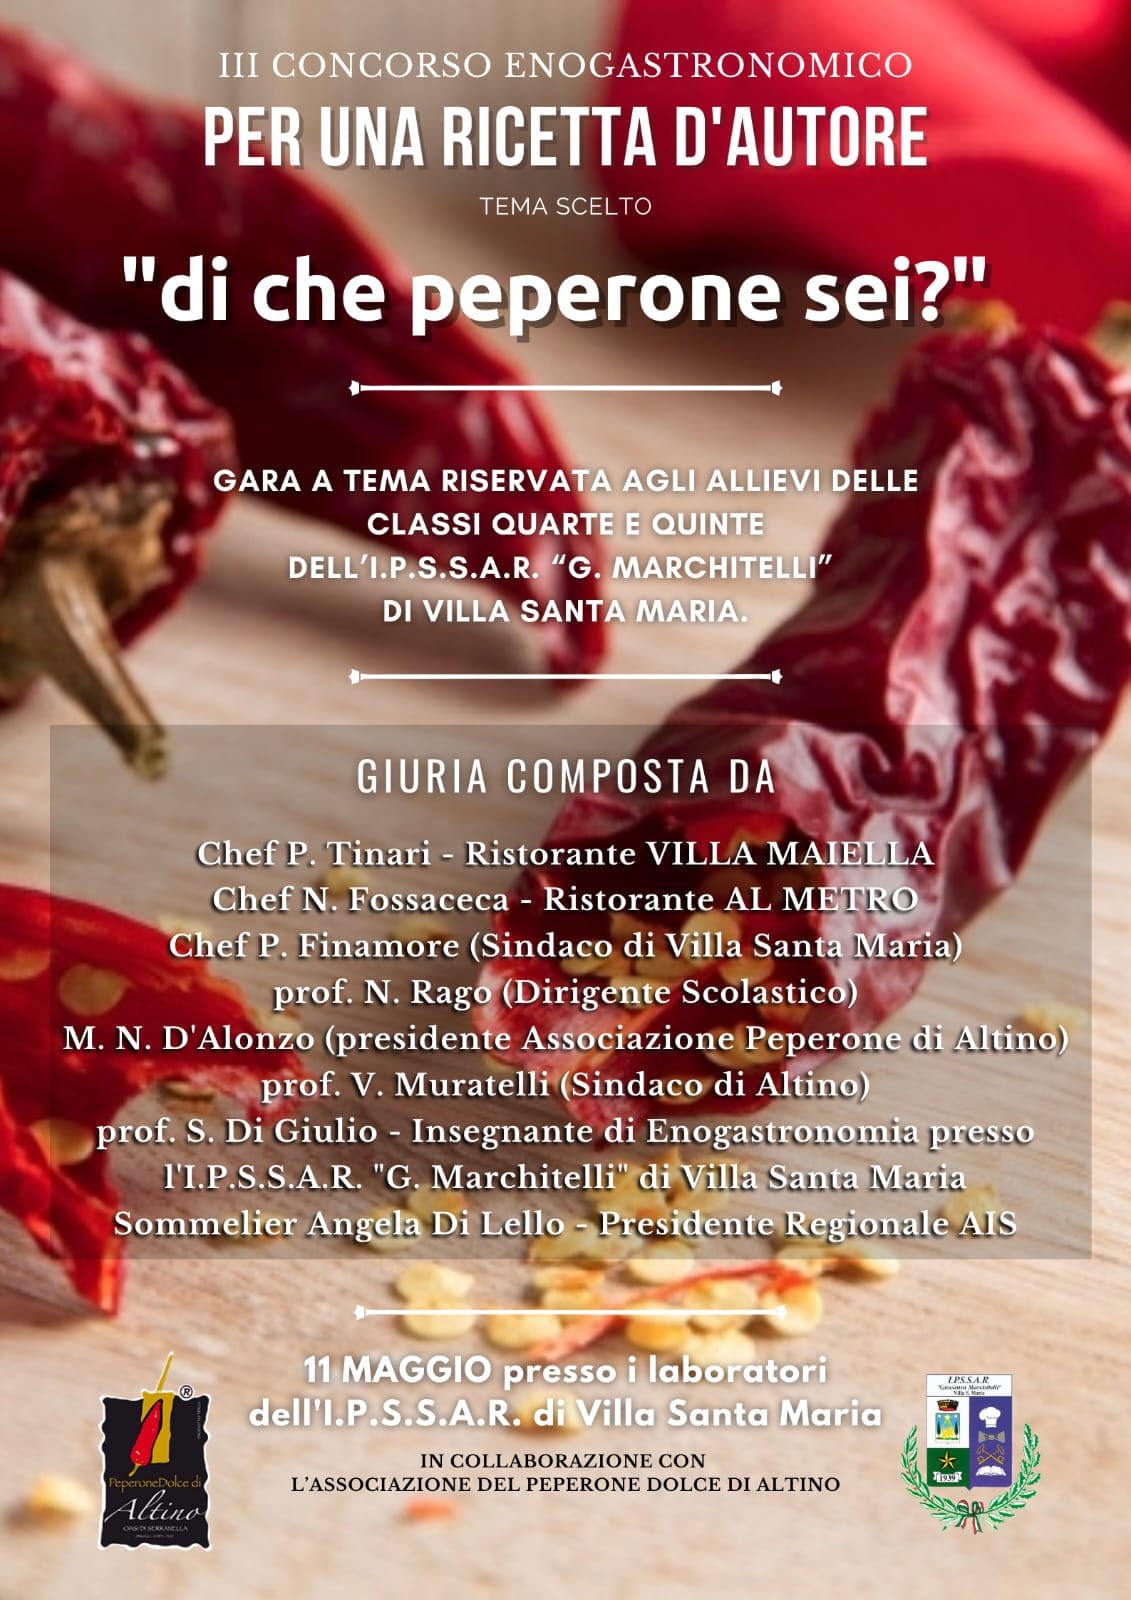 Peperone Dolce di Altino - eccellenza culinaria protagonista del concorso di Villa Santa Maria